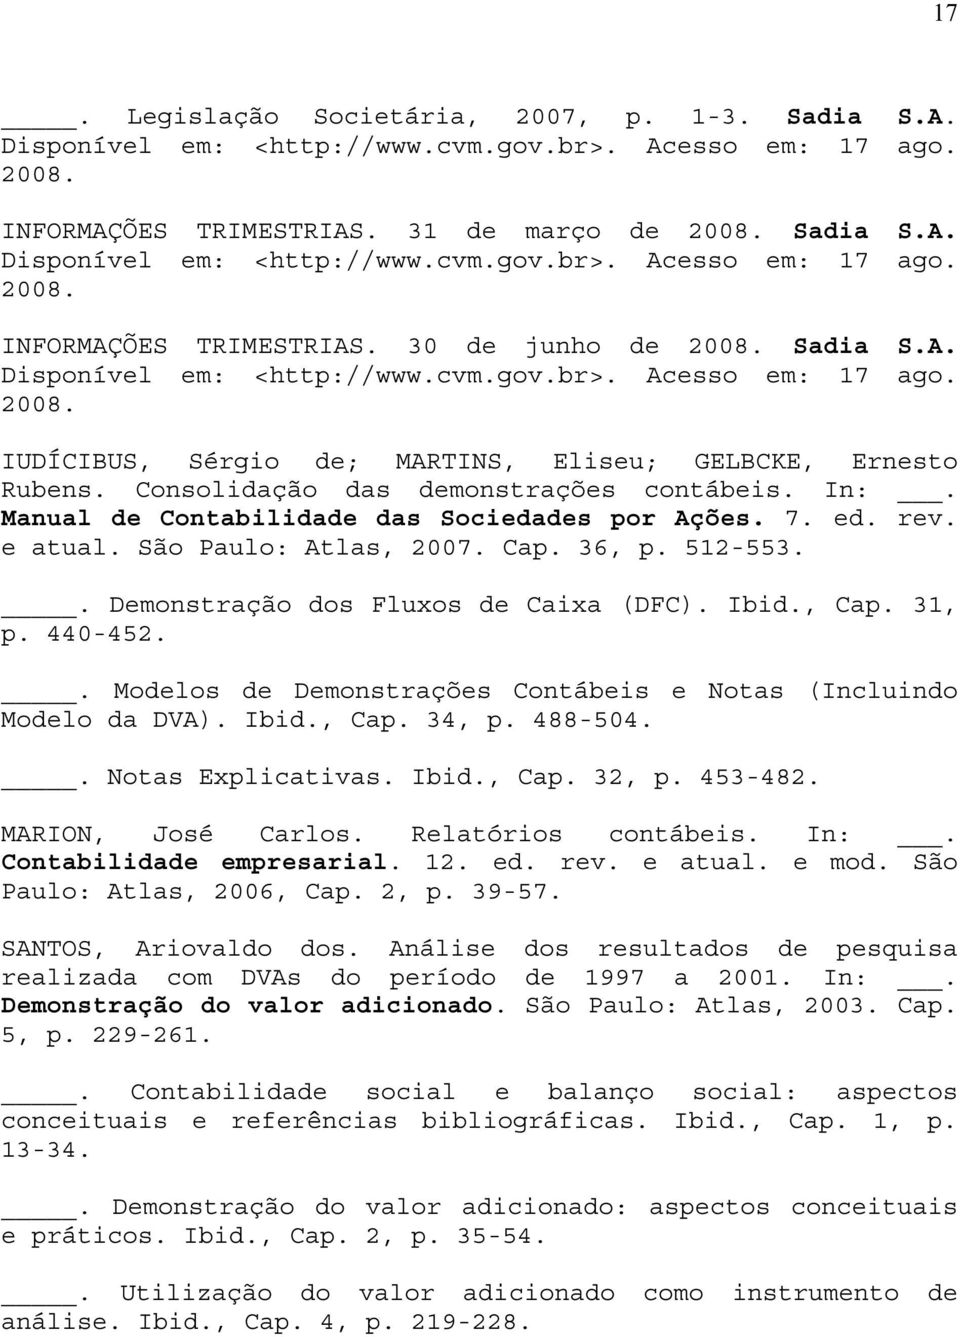 Manual de Contabilidade das Sociedades por Ações. 7. ed. rev. e atual. São Paulo: Atlas, 2007. Cap. 36, p. 512-553.. Demonstração dos Fluxos de Caixa (DFC). Ibid., Cap. 31, p. 440-452.